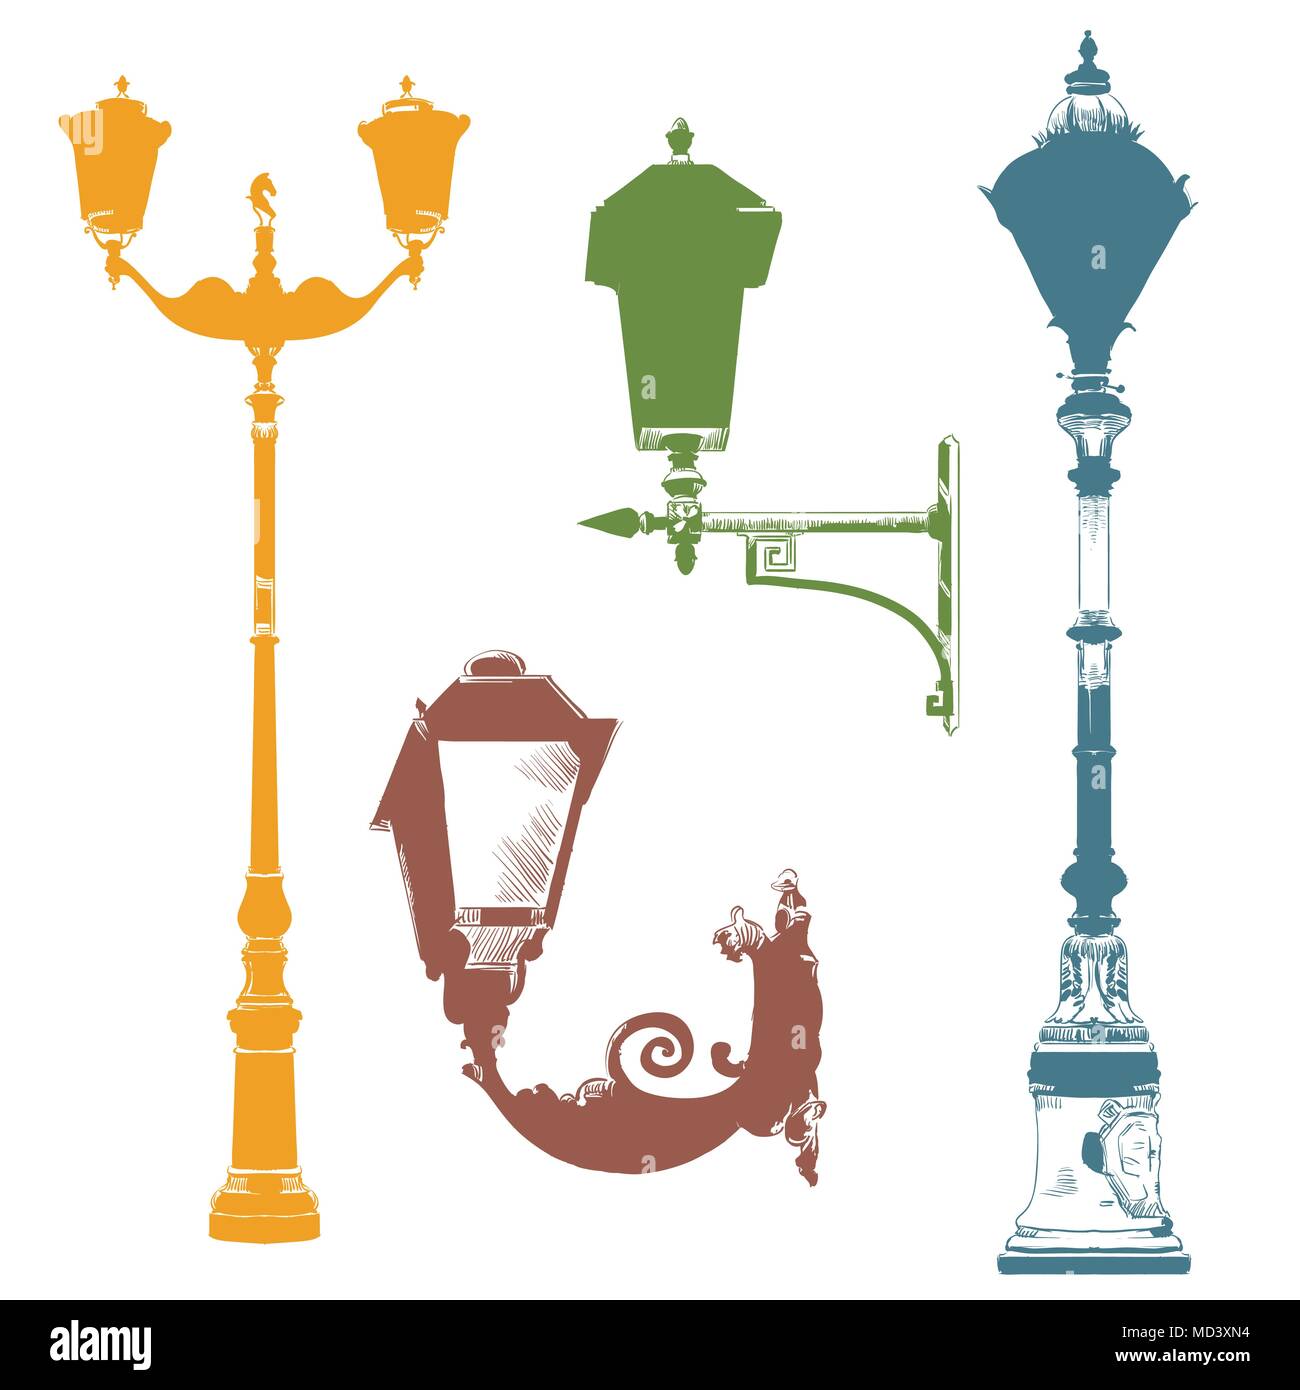 Ensemble de lanternes anciennes illustration vectorielles dessin à la main en différentes couleurs sur fond blanc. Partie 4 Illustration de Vecteur